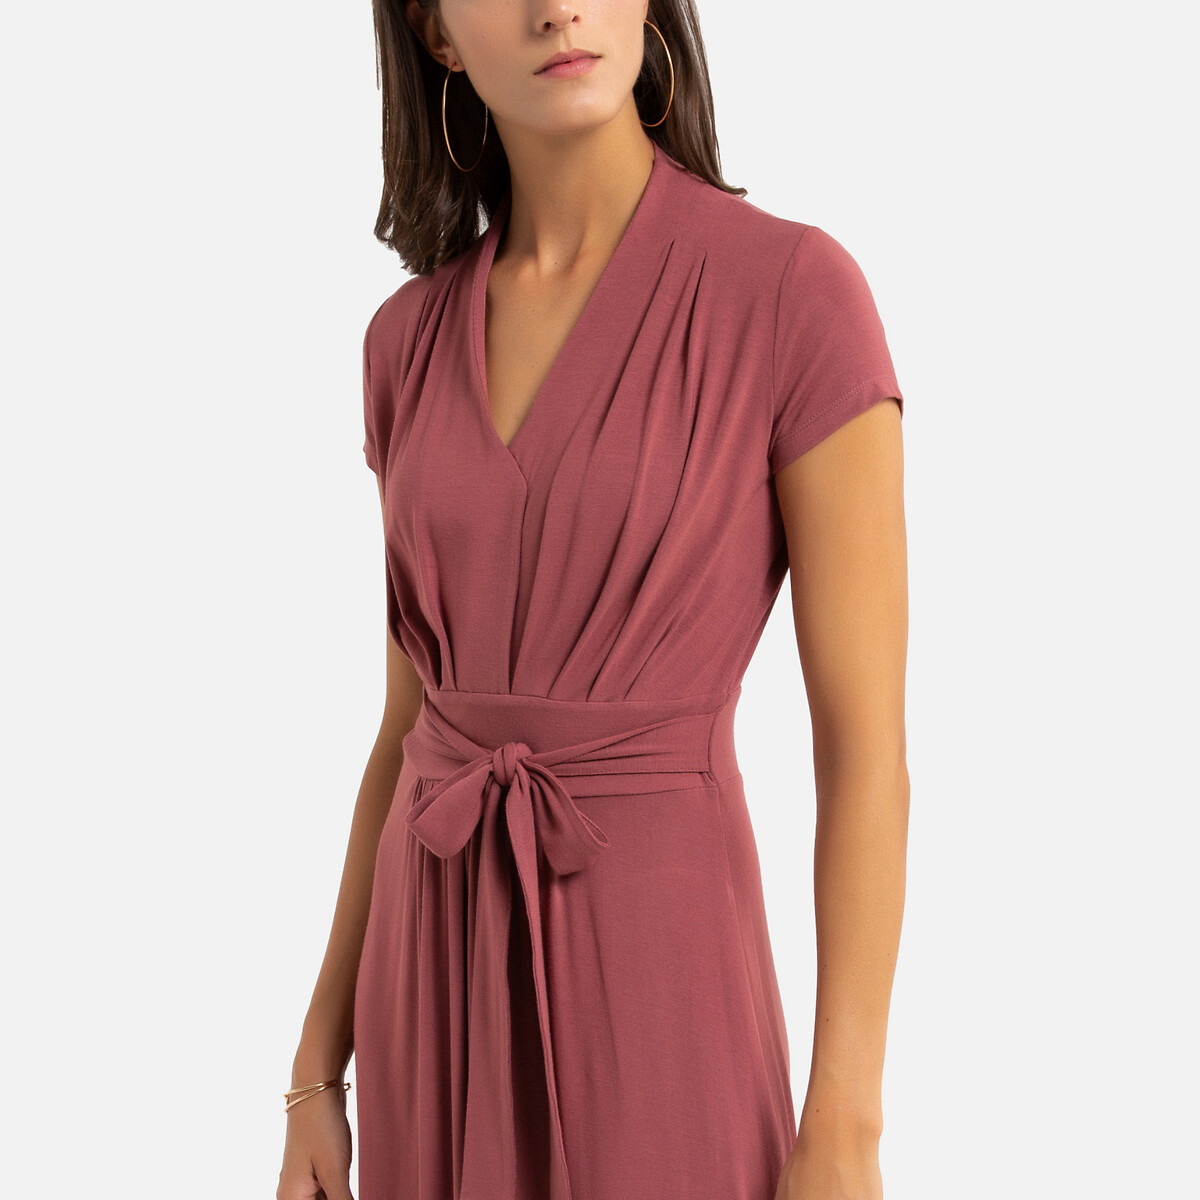 Платье La Redoute Расклешенное 52 (FR) - 58 (RUS) розовый, размер 52 (FR) - 58 (RUS) Расклешенное 52 (FR) - 58 (RUS) розовый - фото 3